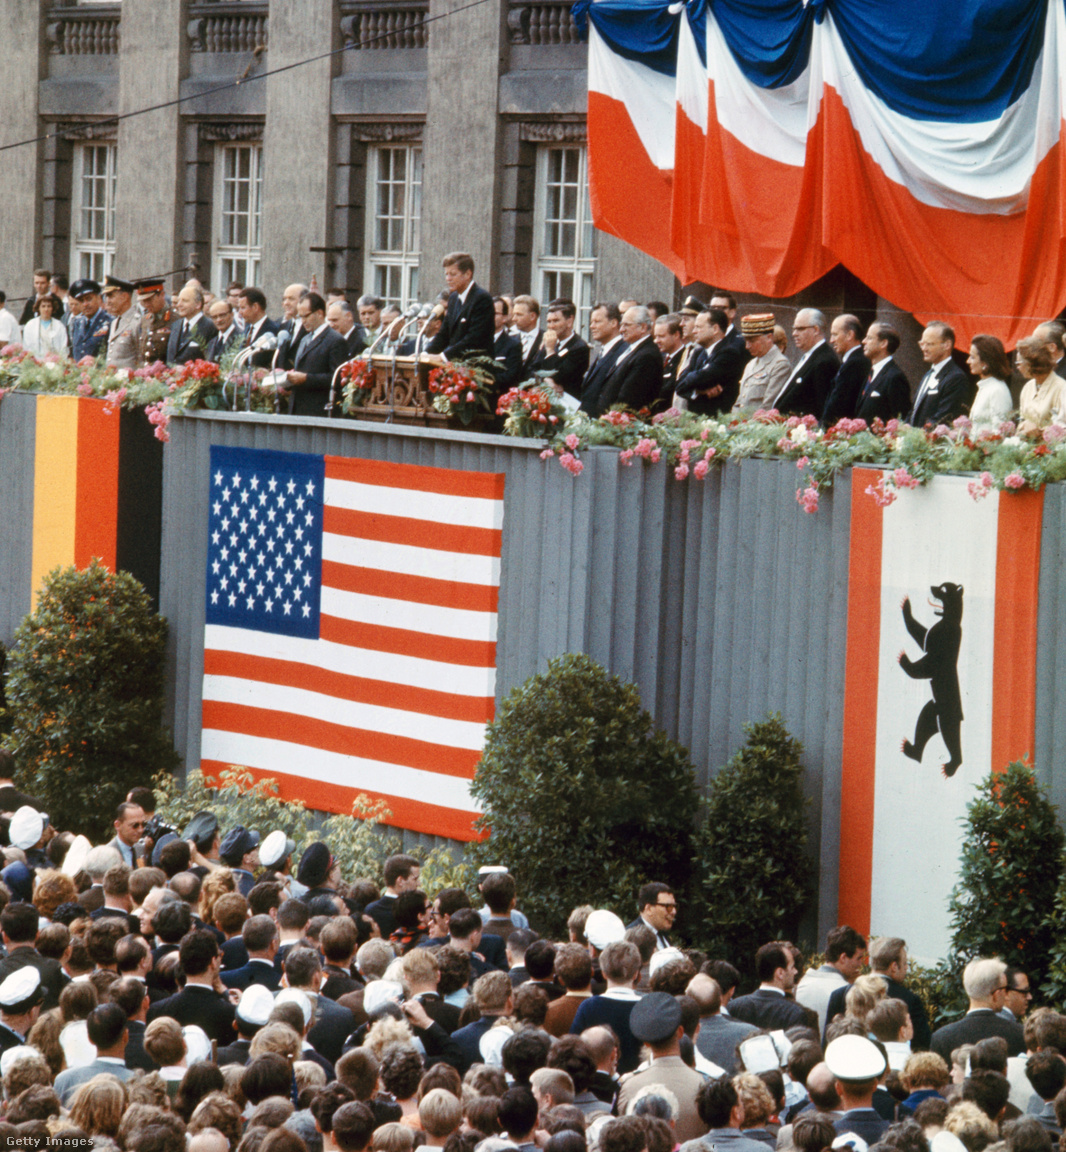 Berlin, Németország, 1963. június 26. John F. Kennedy amerikai elnök a berlini Schöneberg városháza előtt mondott híres beszédében a legendás "Ich bin ein Berliner" mondattal fejezi ki szolidaritását a megosztott város lakóival